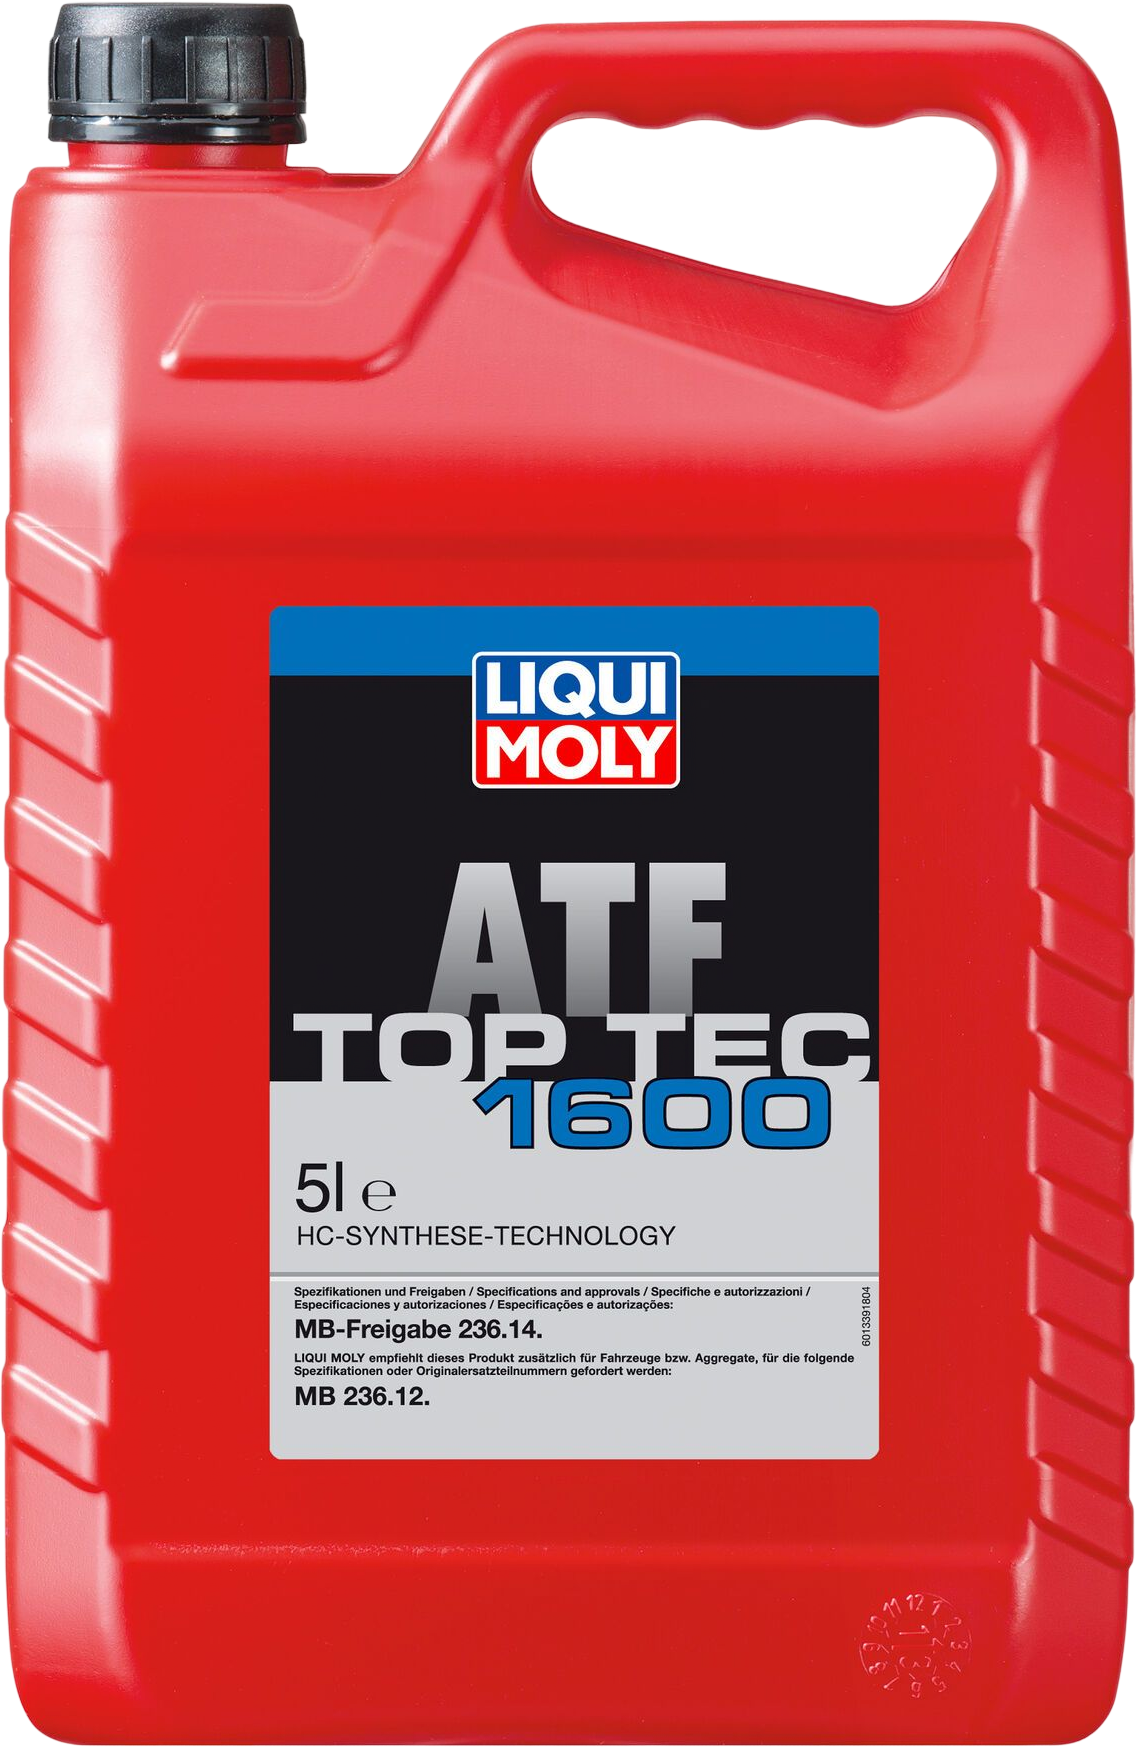 Liqui Moly Top Tec ATF 1600, 5 lt